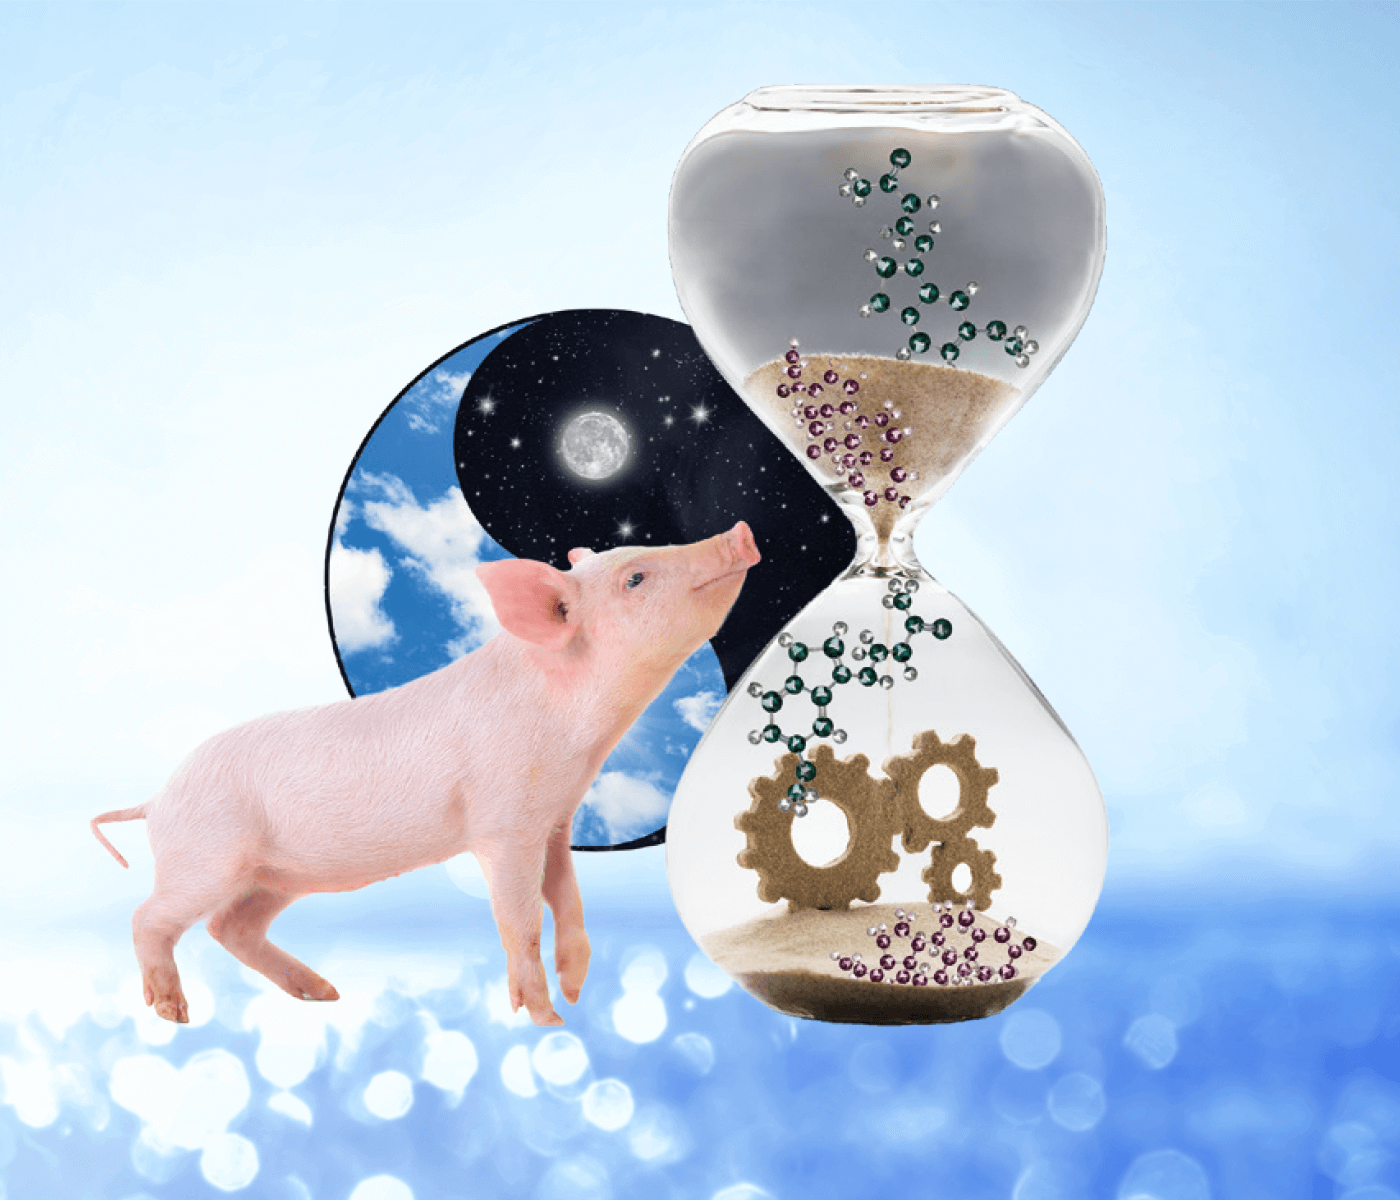 Productividad al compás de los ritmos biológicos porcinos